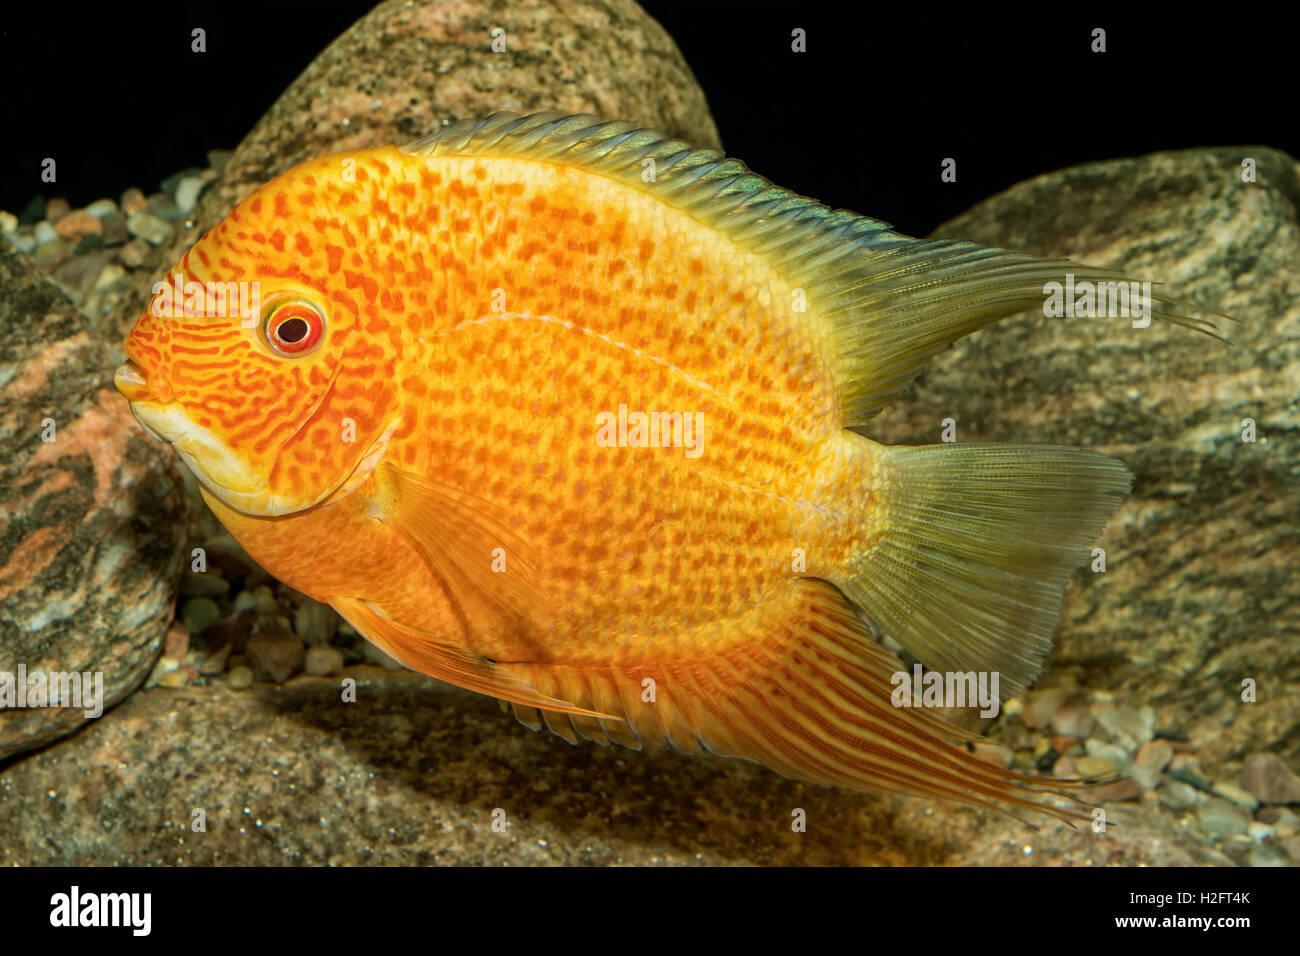 Portrait of freshwater cichlid fish (Heros severus) in aquarium Stock Photo